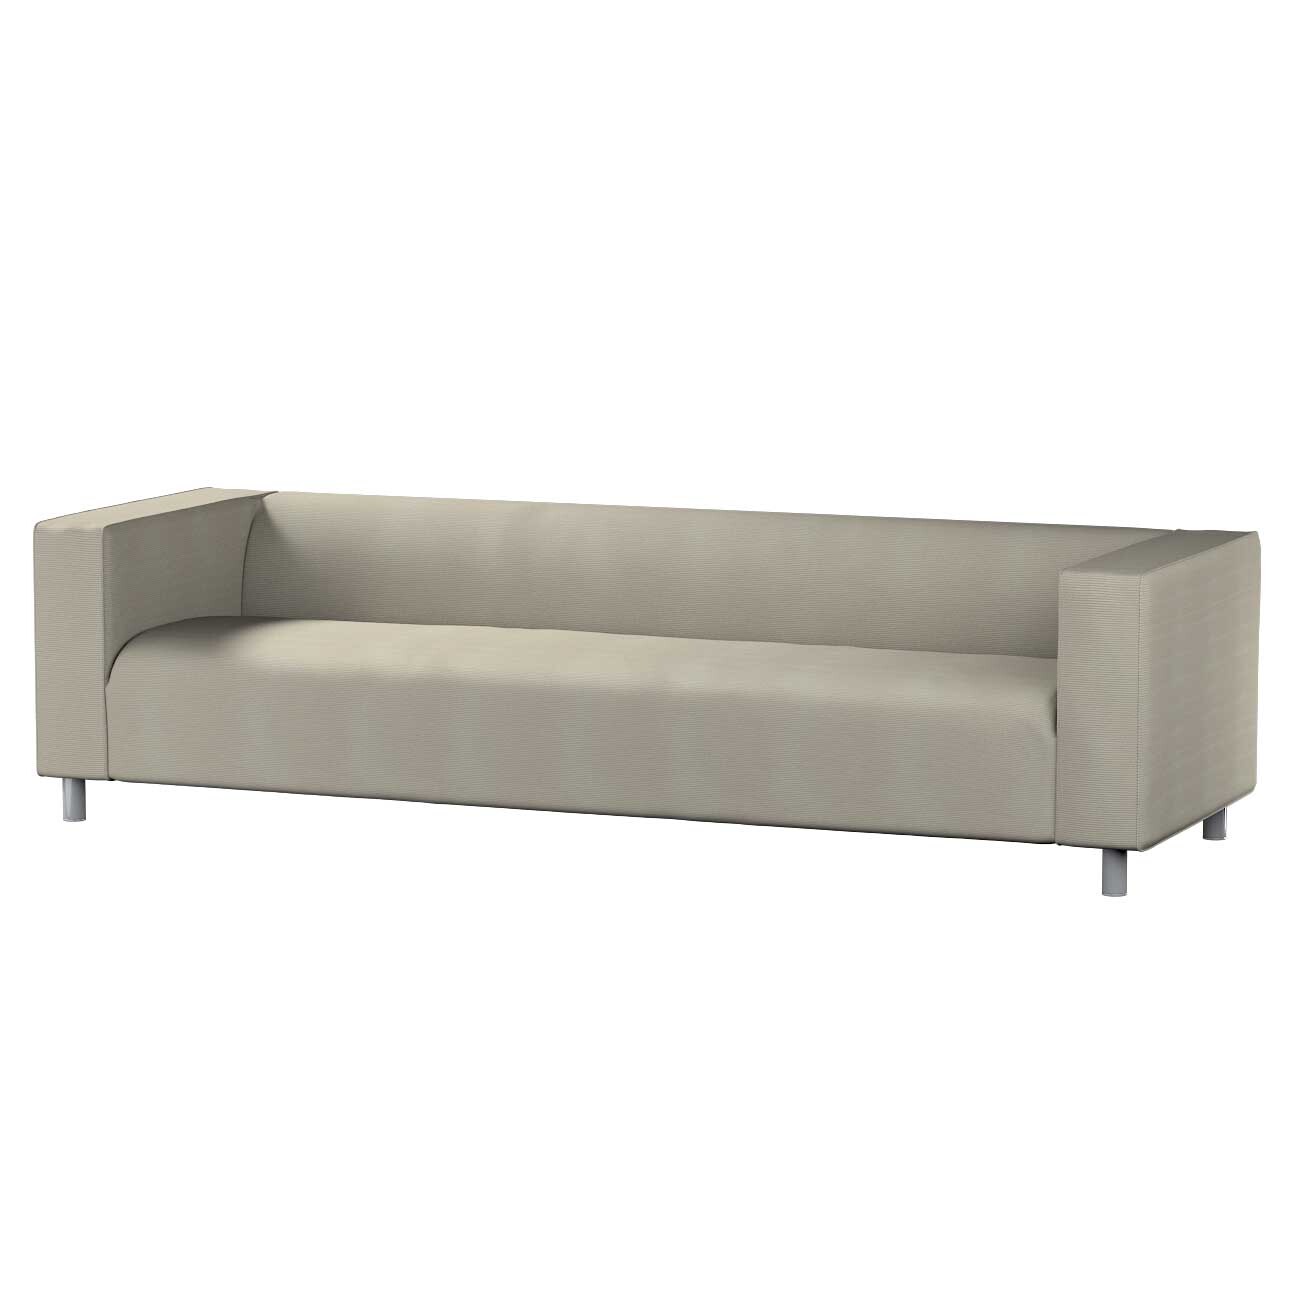 Bezug für Klippan 4-Sitzer Sofa, grau, Bezug für Klippan 4-Sitzer, Manchest günstig online kaufen